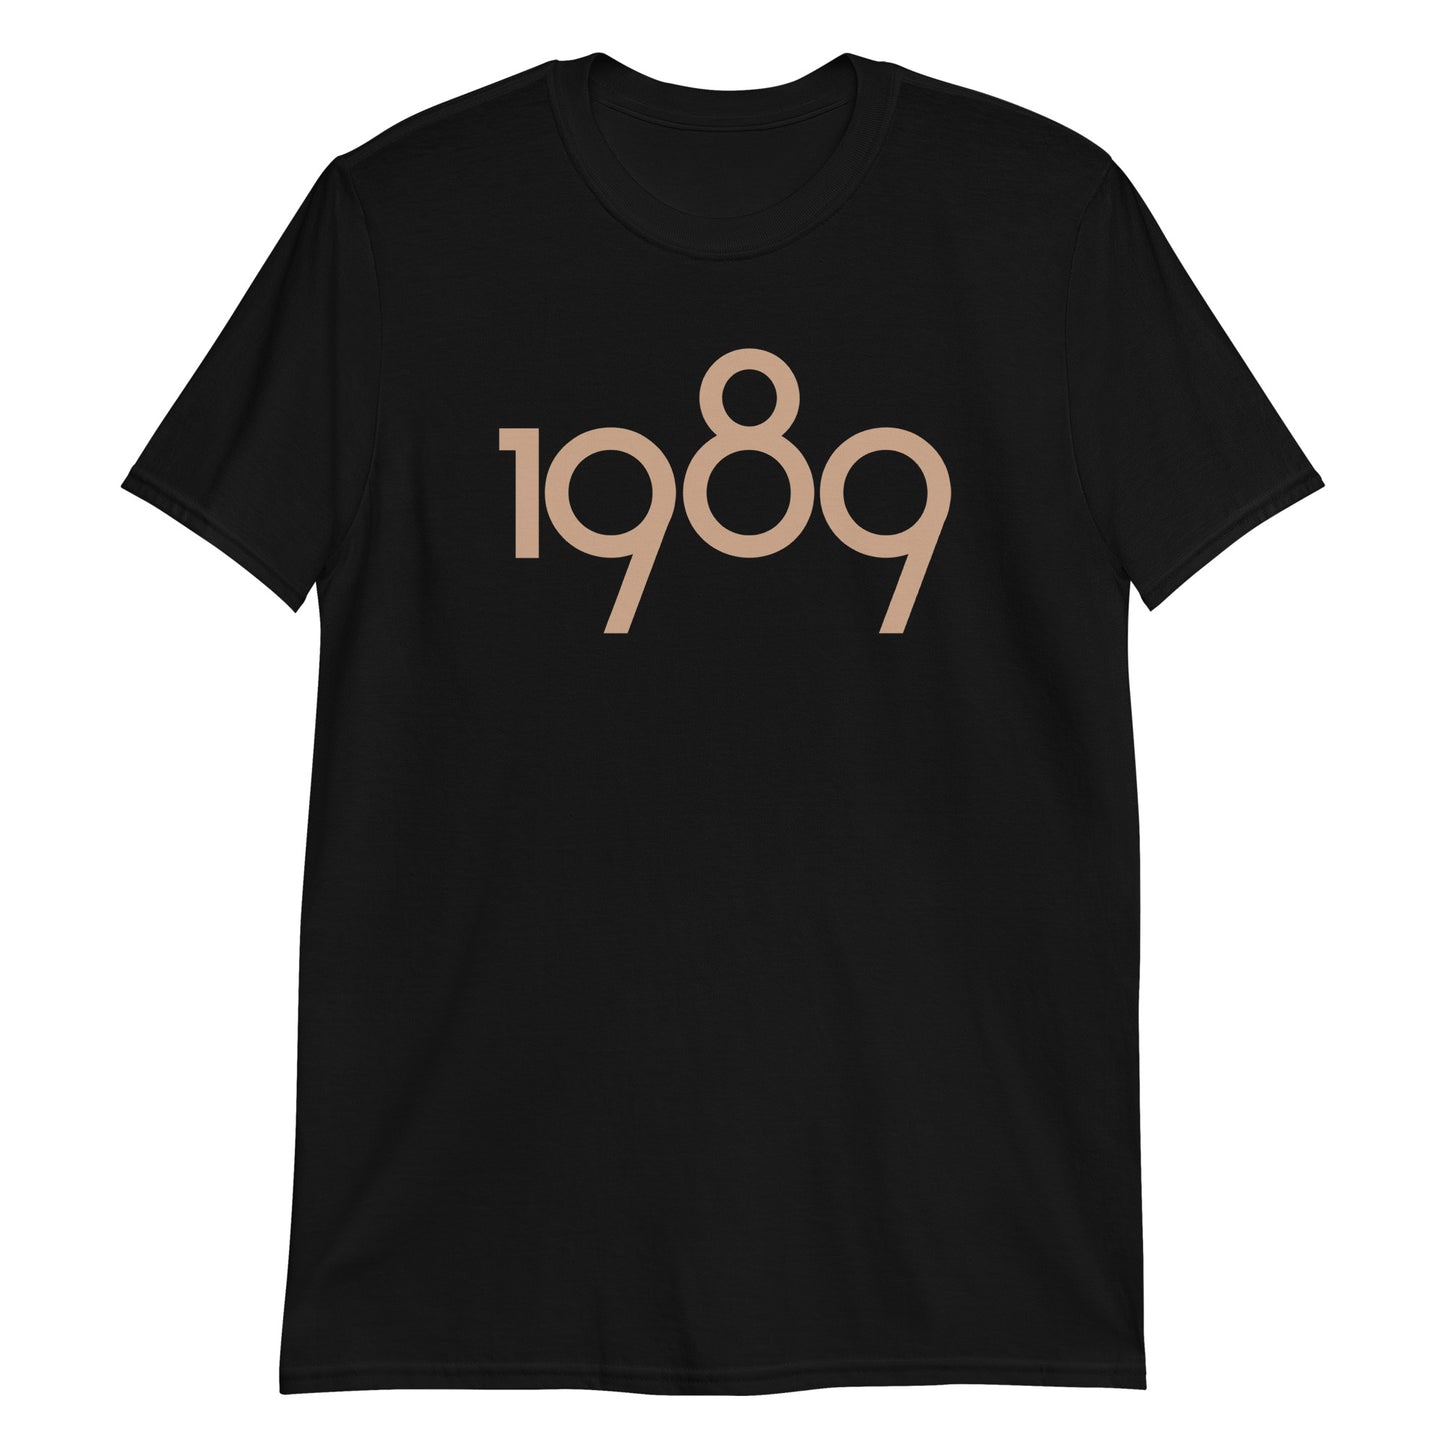 Short-Sleeve Unisex T-Shirt 1989a